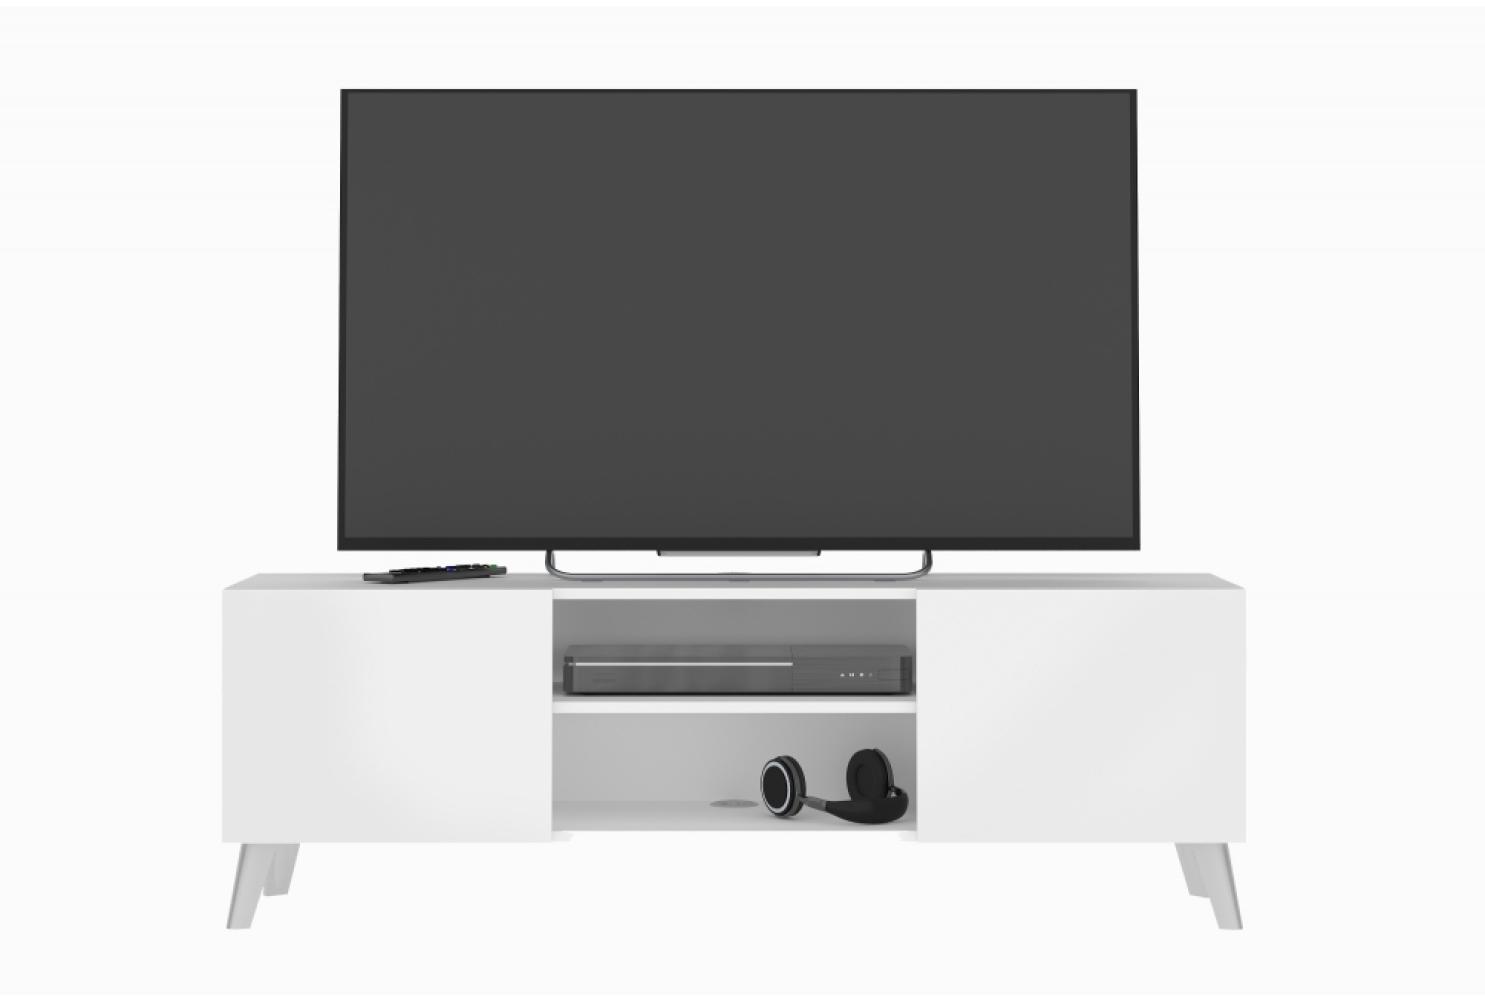 Lowboard stehend / hängend montierbar BRIGHTON Hifi TV Weiß ca. 140 x 35 x 35 cm Bild 1